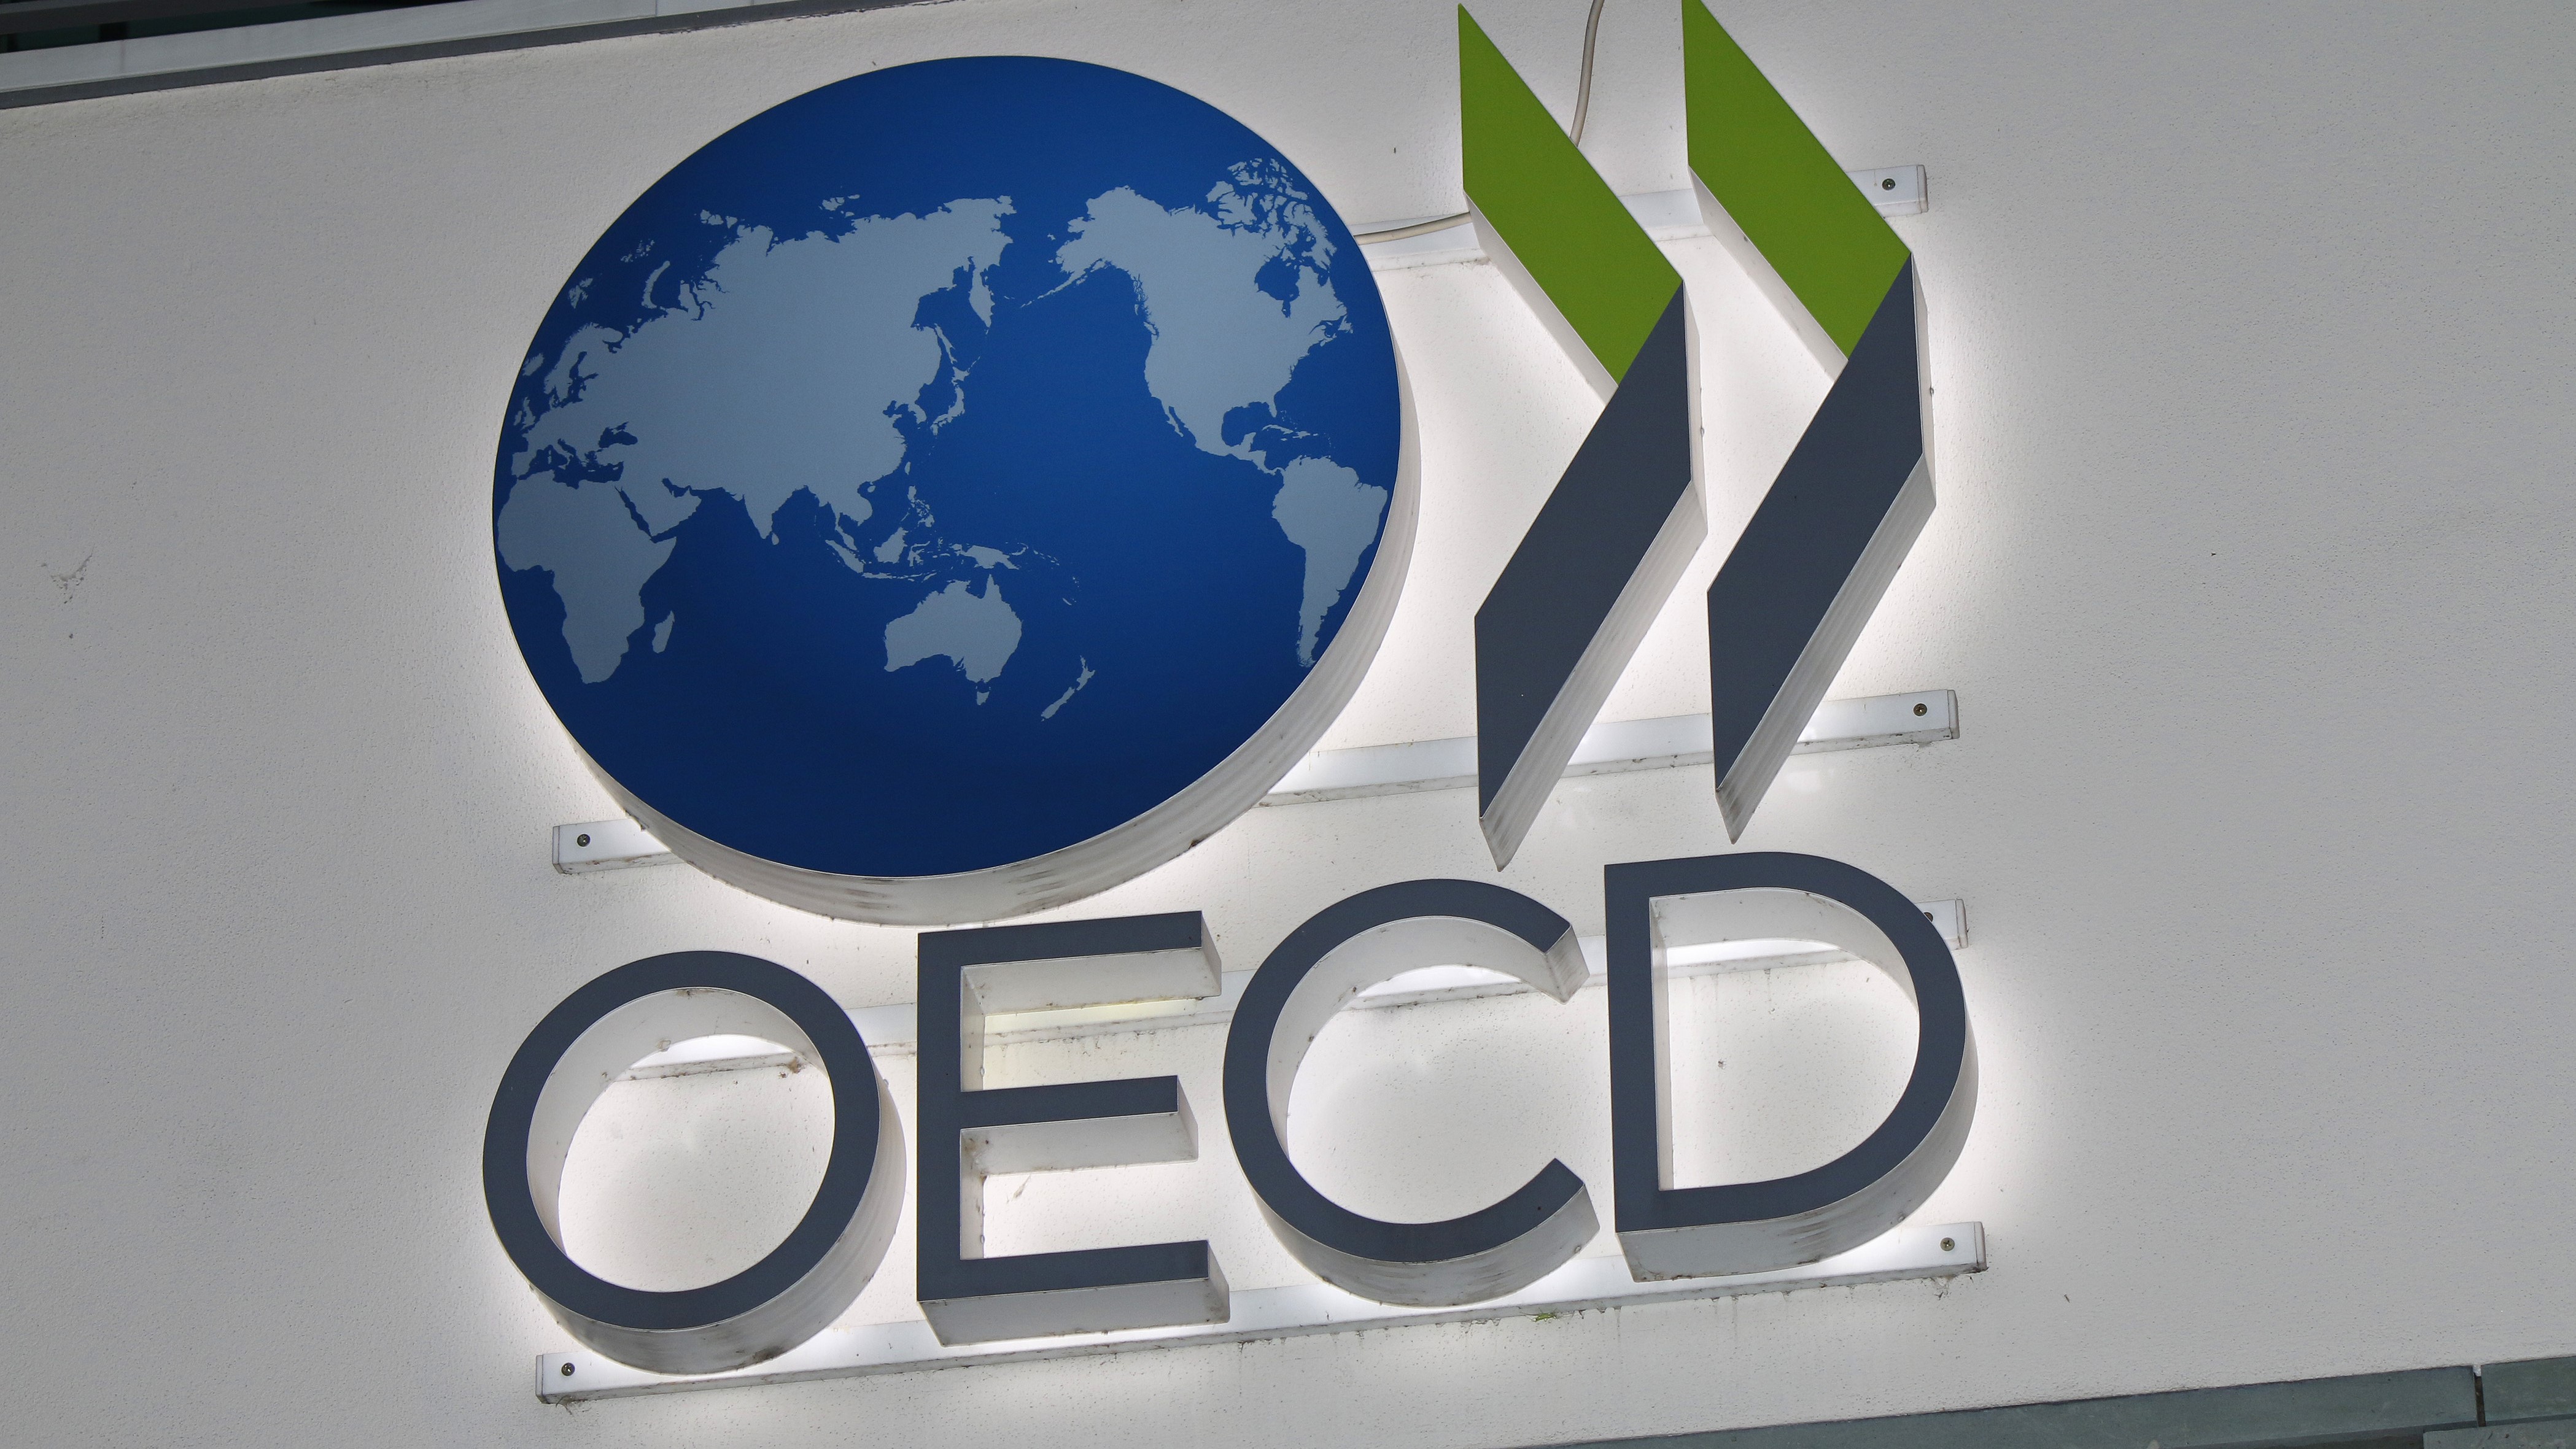 Области экономического сотрудничества. ОЭСР И ОЕЭС. ОЭСР эмблема. Организация экономического сотрудничества и развития. Организация европейского экономического сотрудничества.